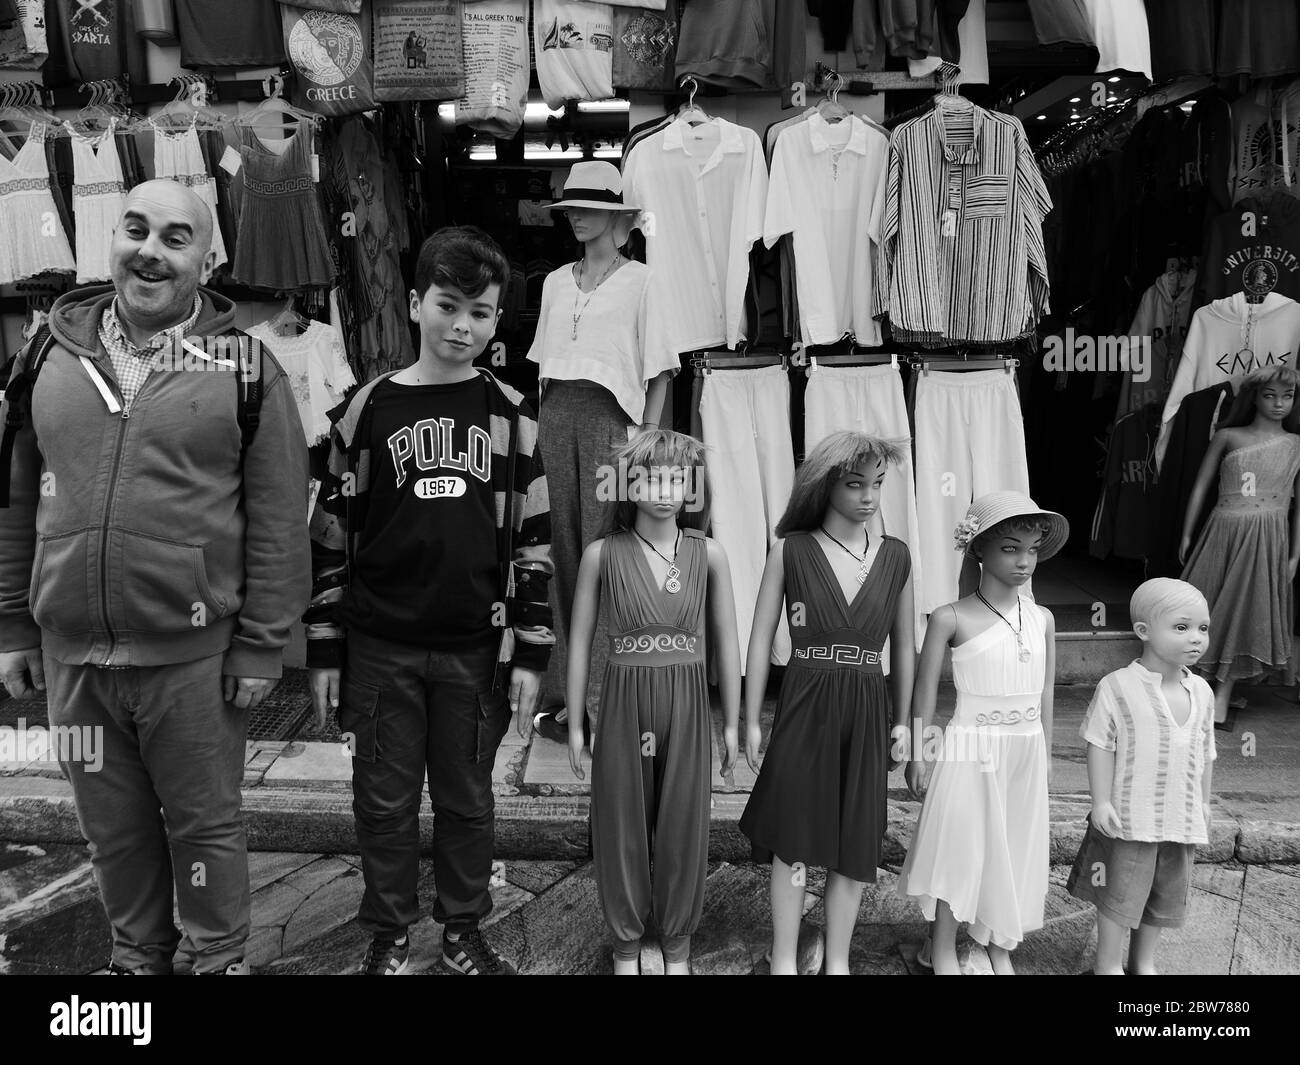 Amüsantes Schwarz-Weiß-Foto von Leuten, die sich als Dummies/Shop-Mannequin-Modelle vor einem Kleiderladen in Athen ausstellen - aufgereiht in einer Reihenmischung Stockfoto